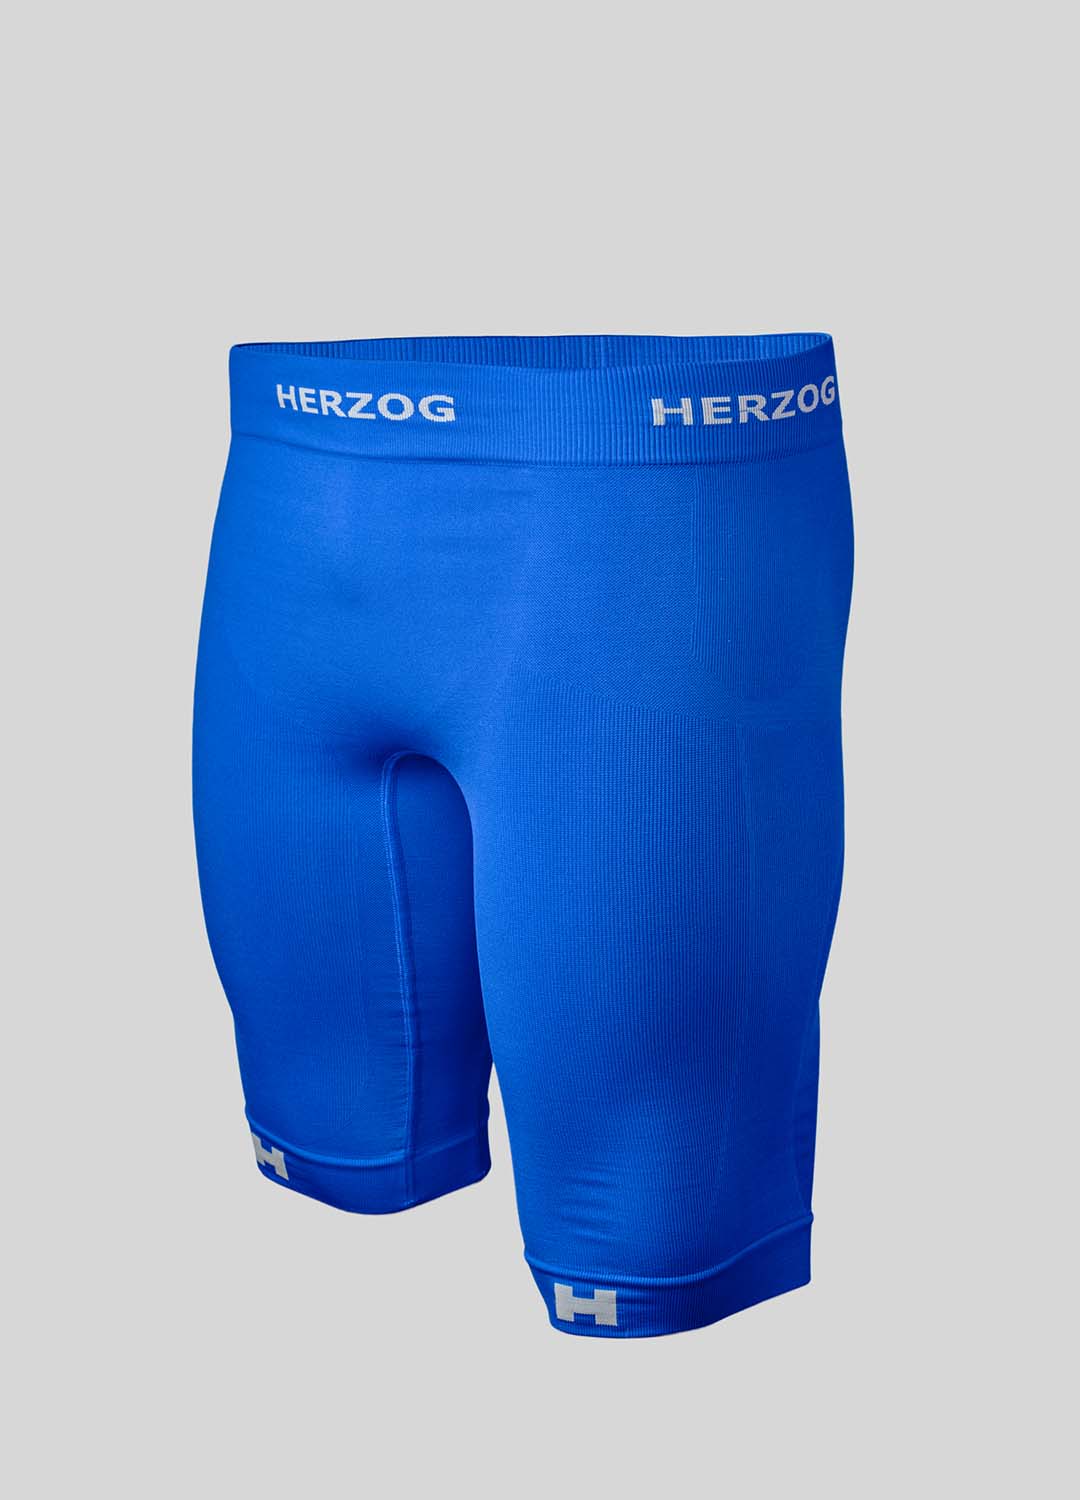 gips precedent Bedienen Herzog PRO sport compressie shorts blauw kopen | Herzog